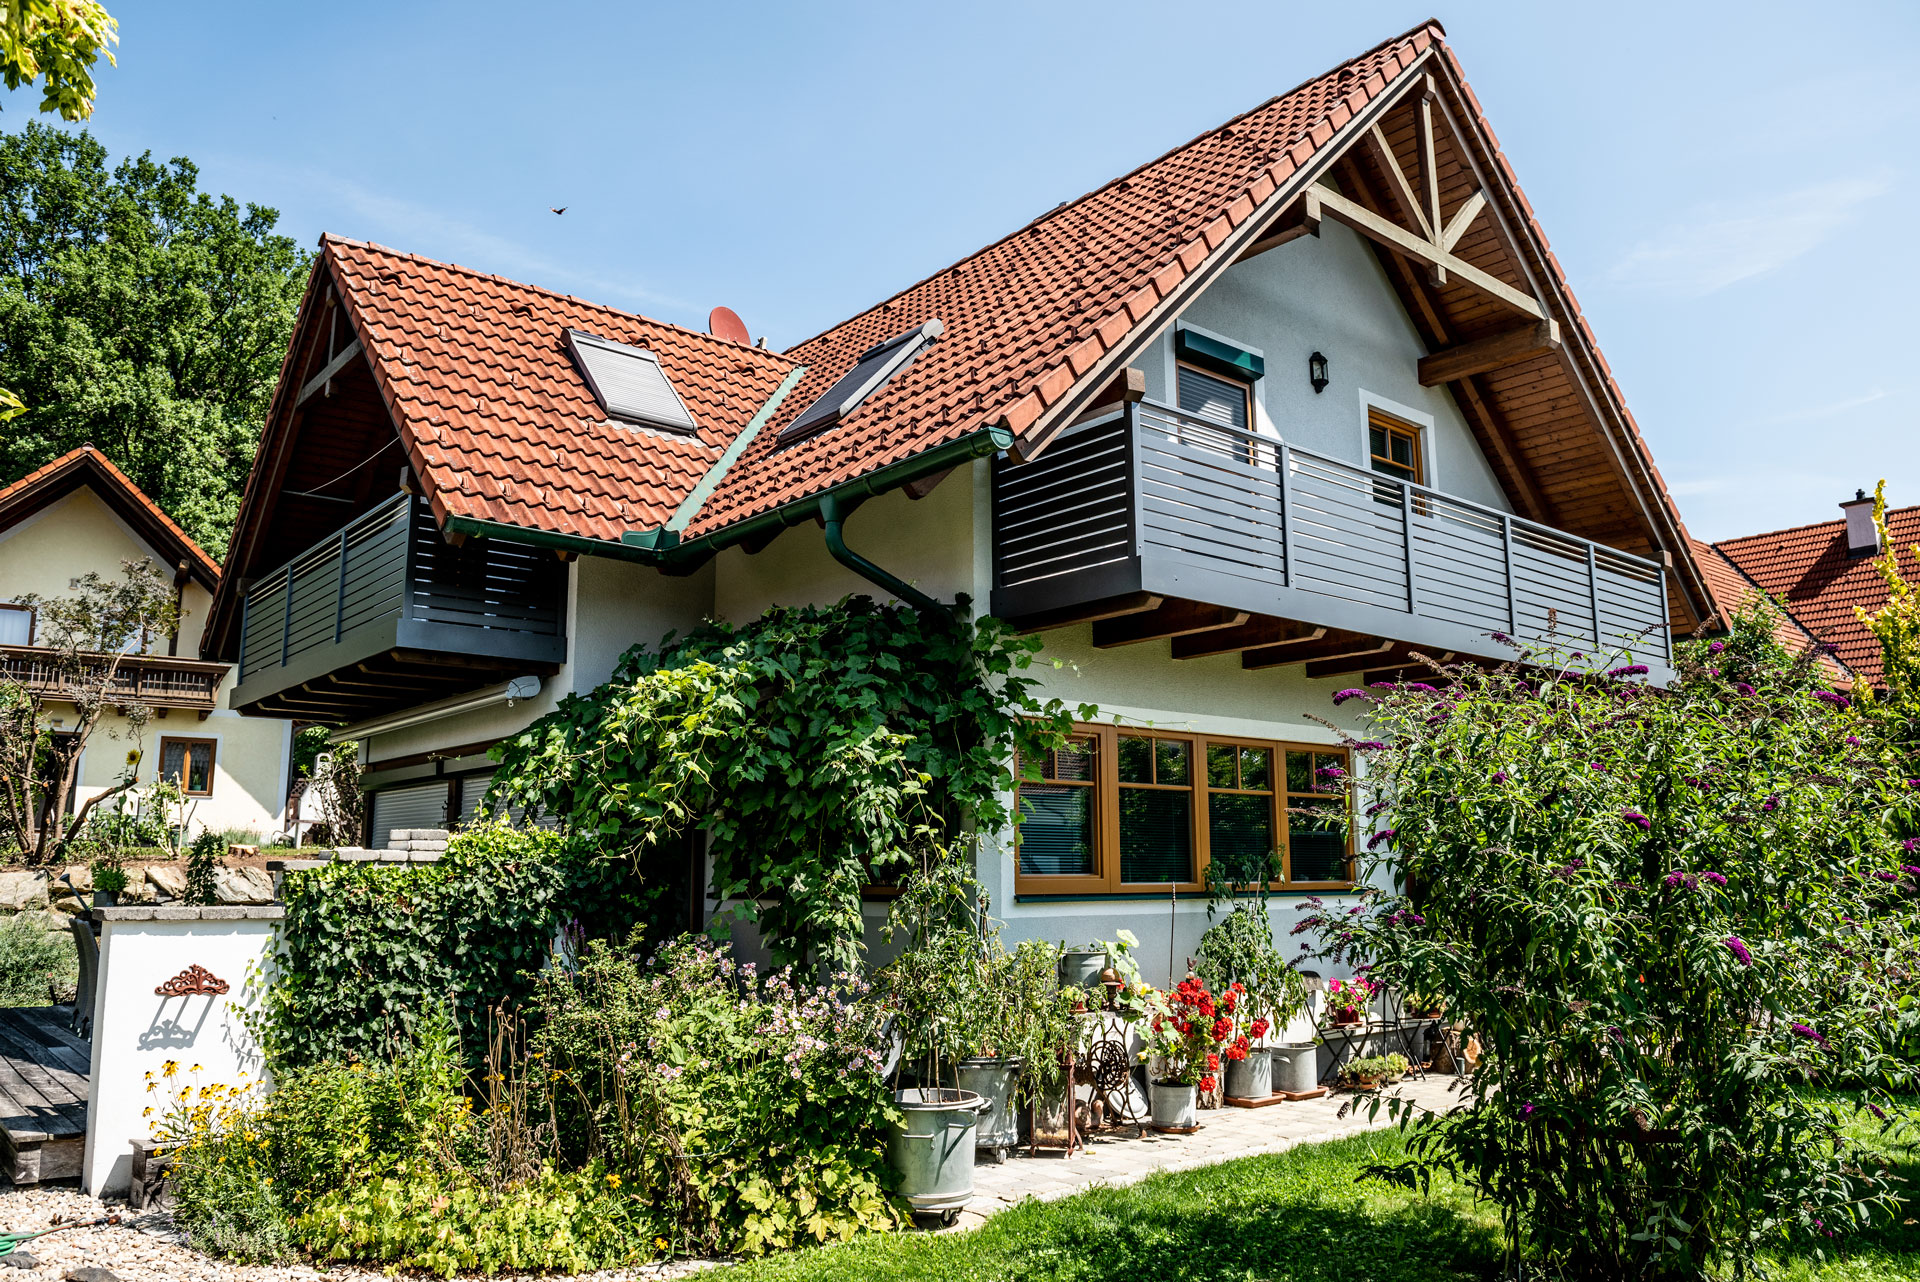 Telfs 17 a | Haus mit rotem Ziegel-Satteldach und modernem querlatten Alu-Balkongeländer | Svoboda